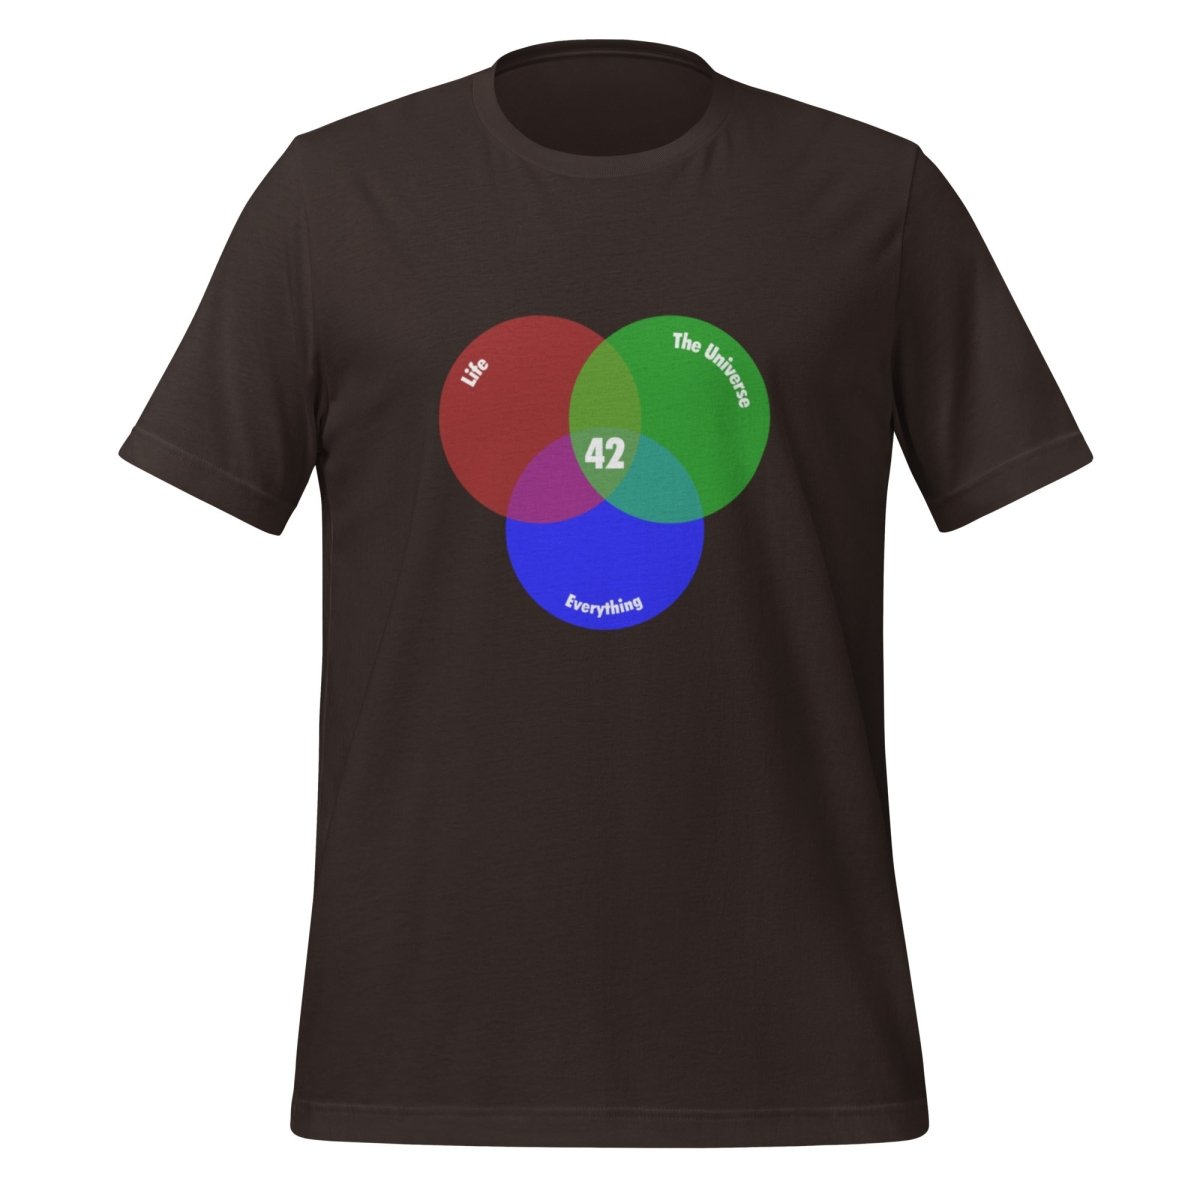 42 Venn Diagram T - Shirt (unisex) - Brown - AI Store